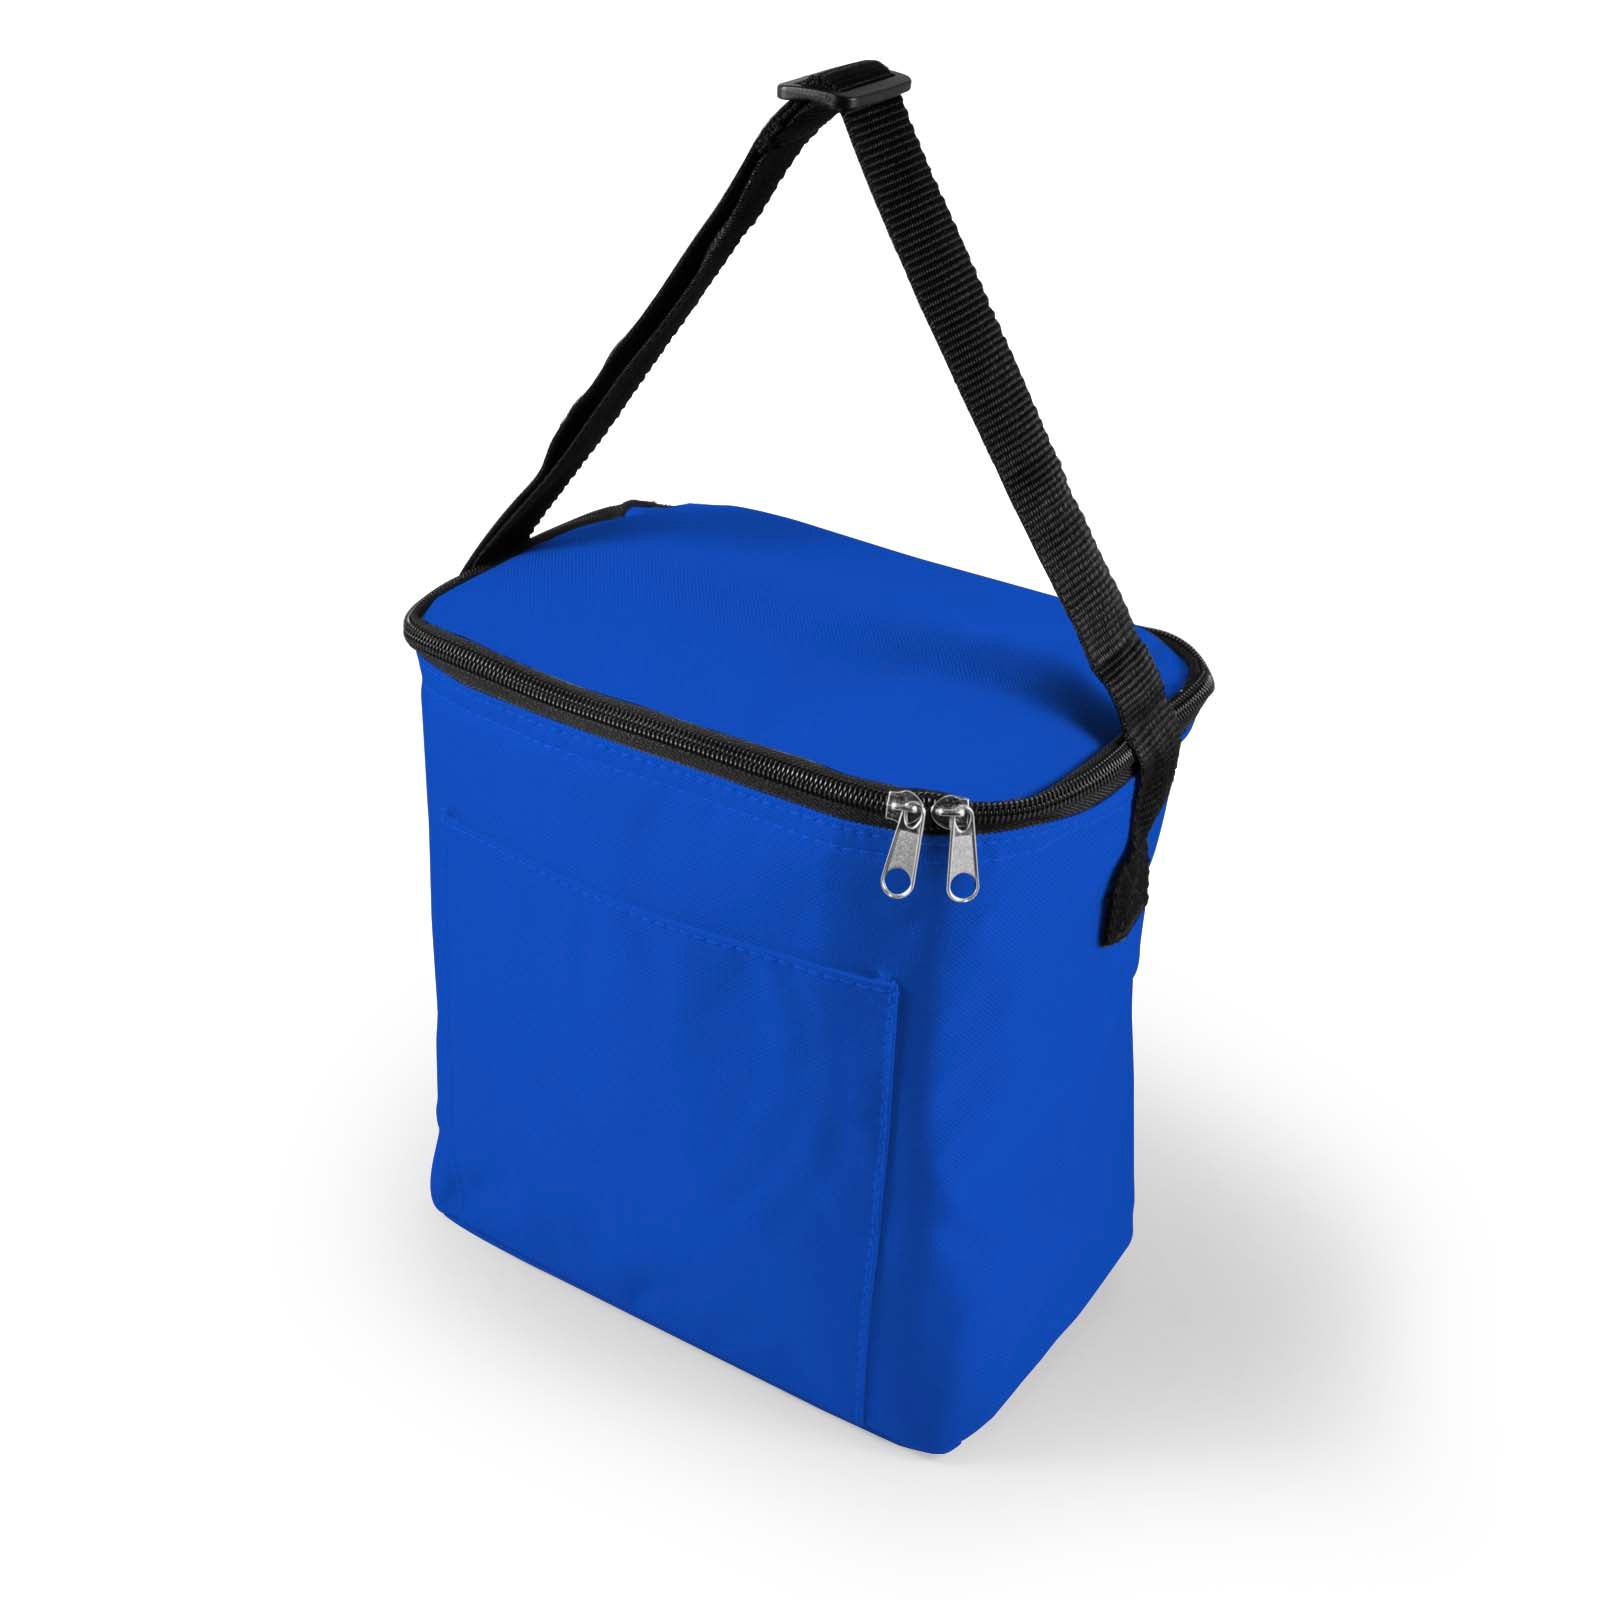 The Subzero Cooler Bag